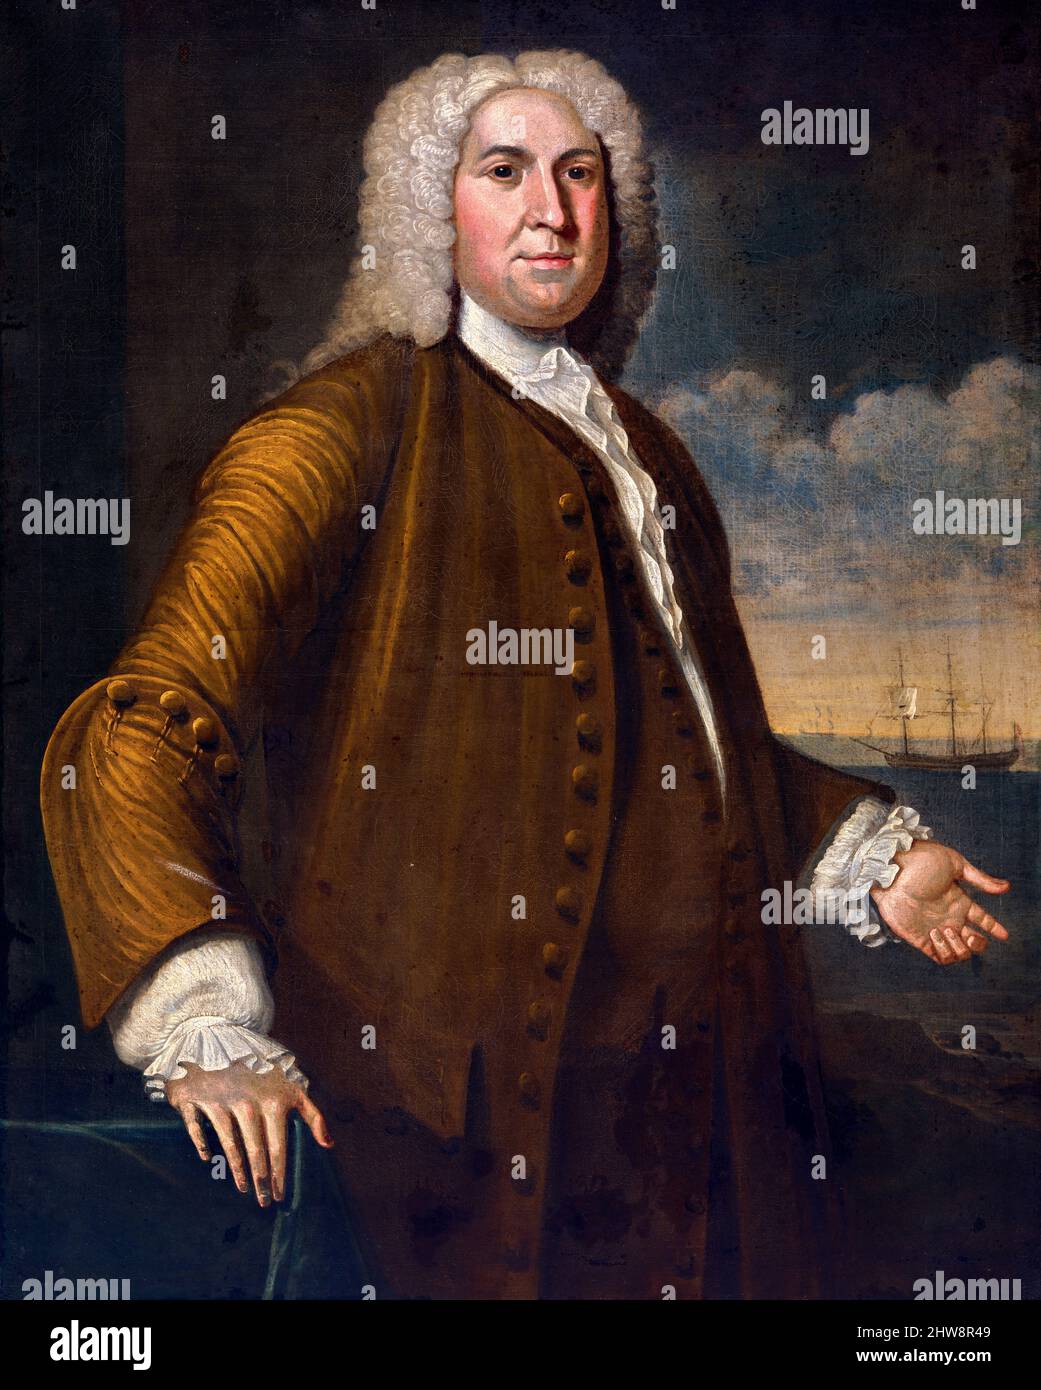 Porträt des amerikanischen Kaufmanns Peter Faneuil (1700-1743) von John Smibert, Öl auf Leinwand, c. 1742 Stockfoto